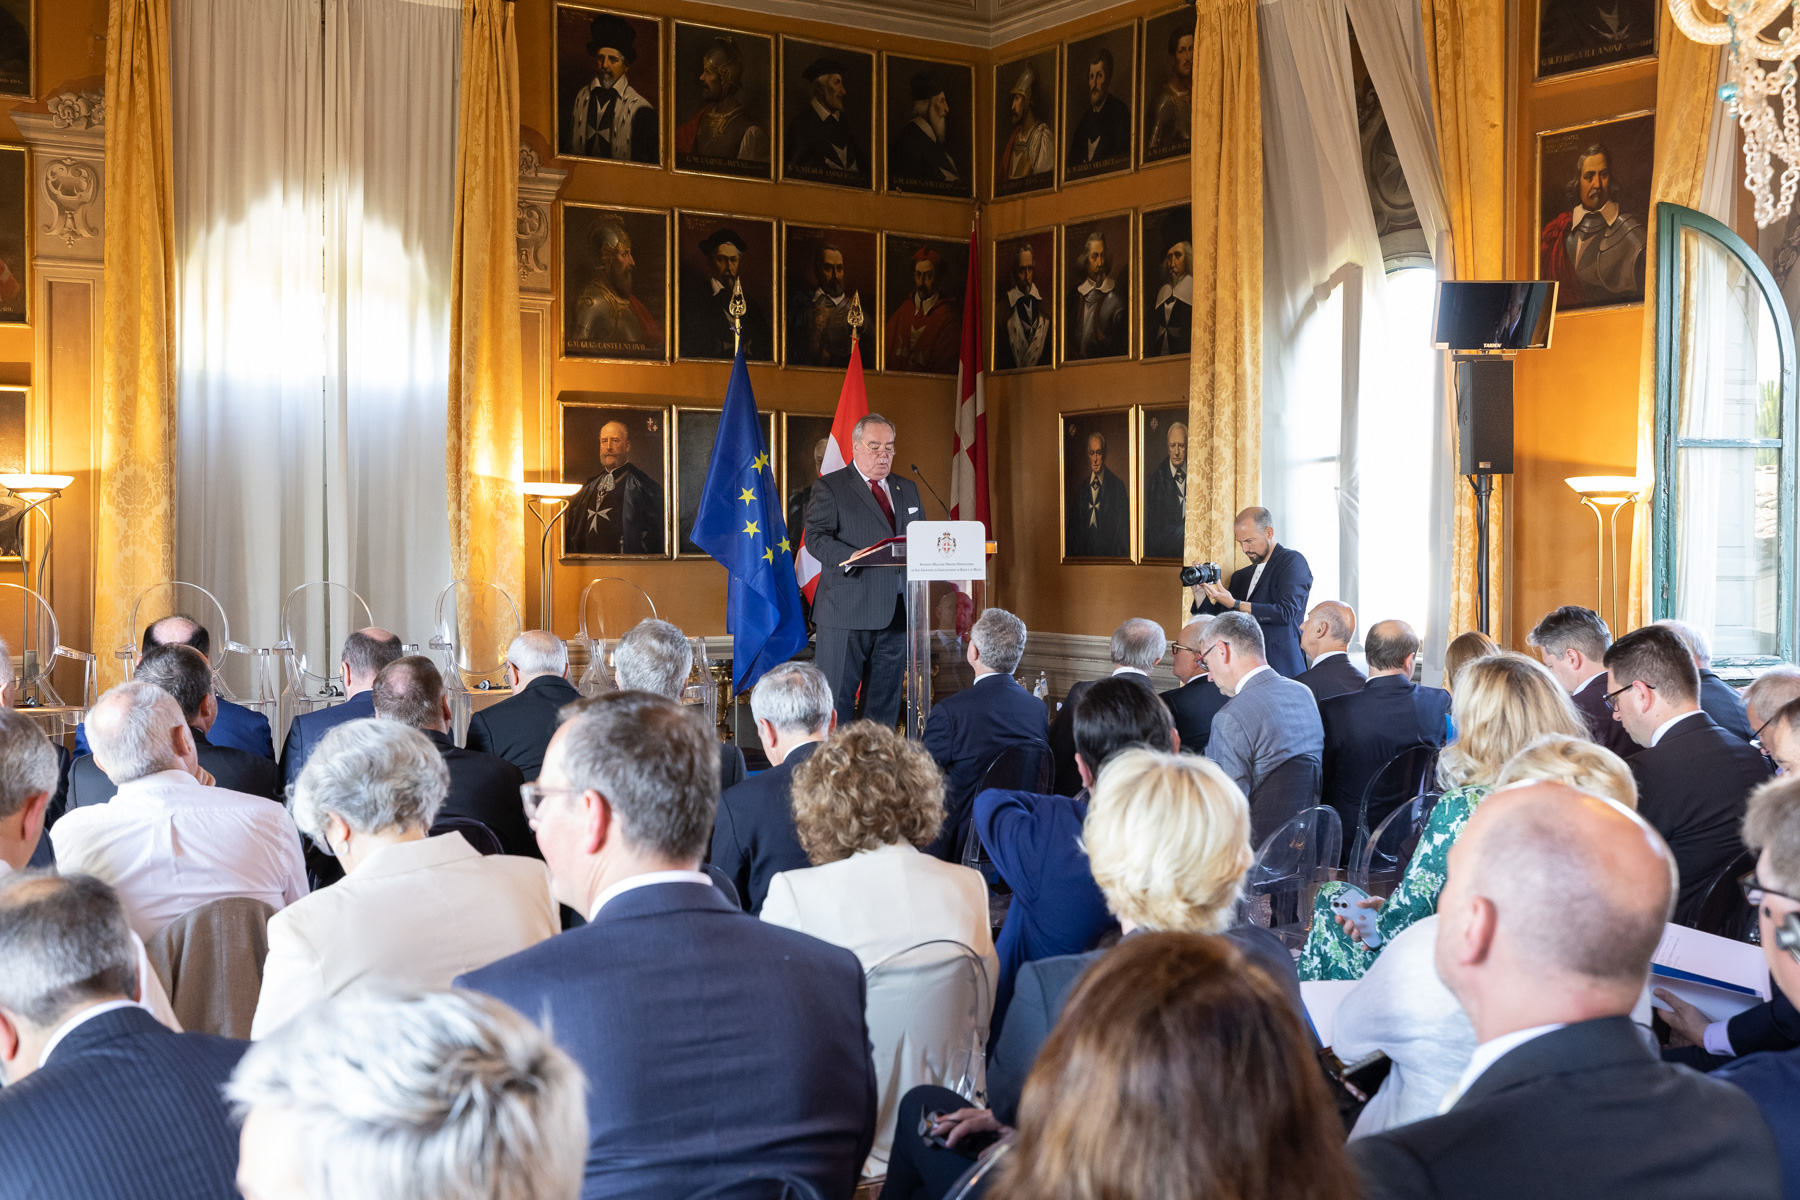 Cristianesimo, Europa e la sua missione nel mondo”: riunione della Delegazione del Partito Popolare Europeo alla Villa Magistrale